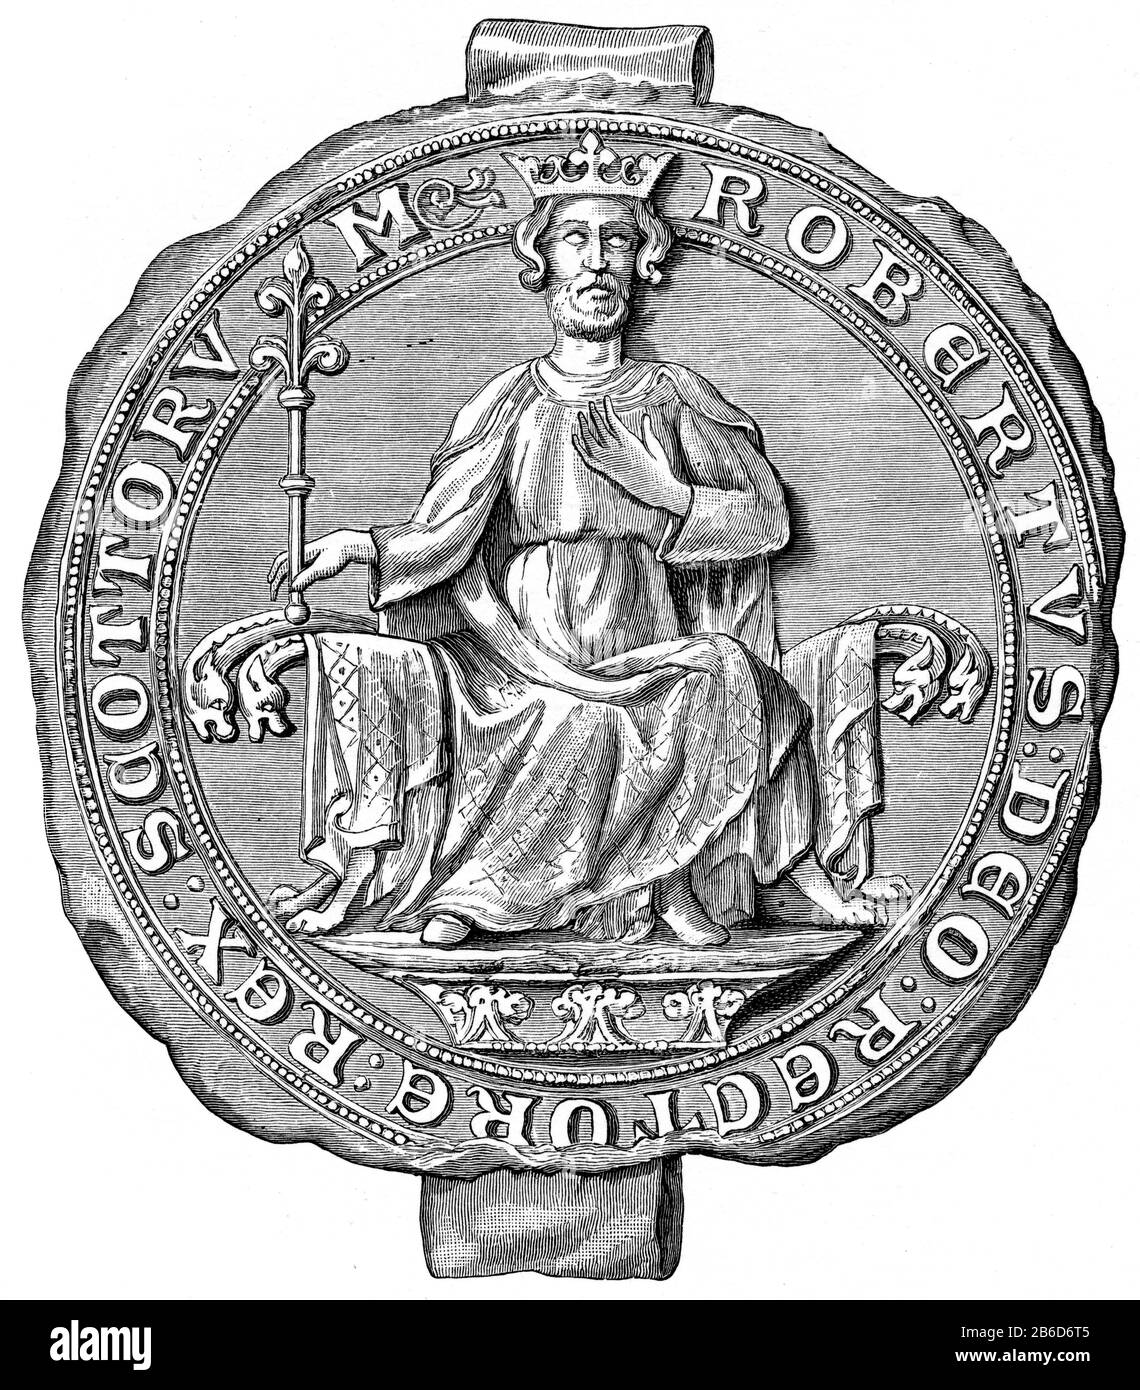 Sceau de Robert Bruce, roi d'Écosse, XIVe siècle. Le roi Robert I (1274-1329), connu sous le nom de Robert le Bruce, était roi d'Écosse de 1306 à sa mort en 1329. Robert J'ai dirigé l'Ecosse pendant les guerres de l'indépendance écossaise. Banque D'Images